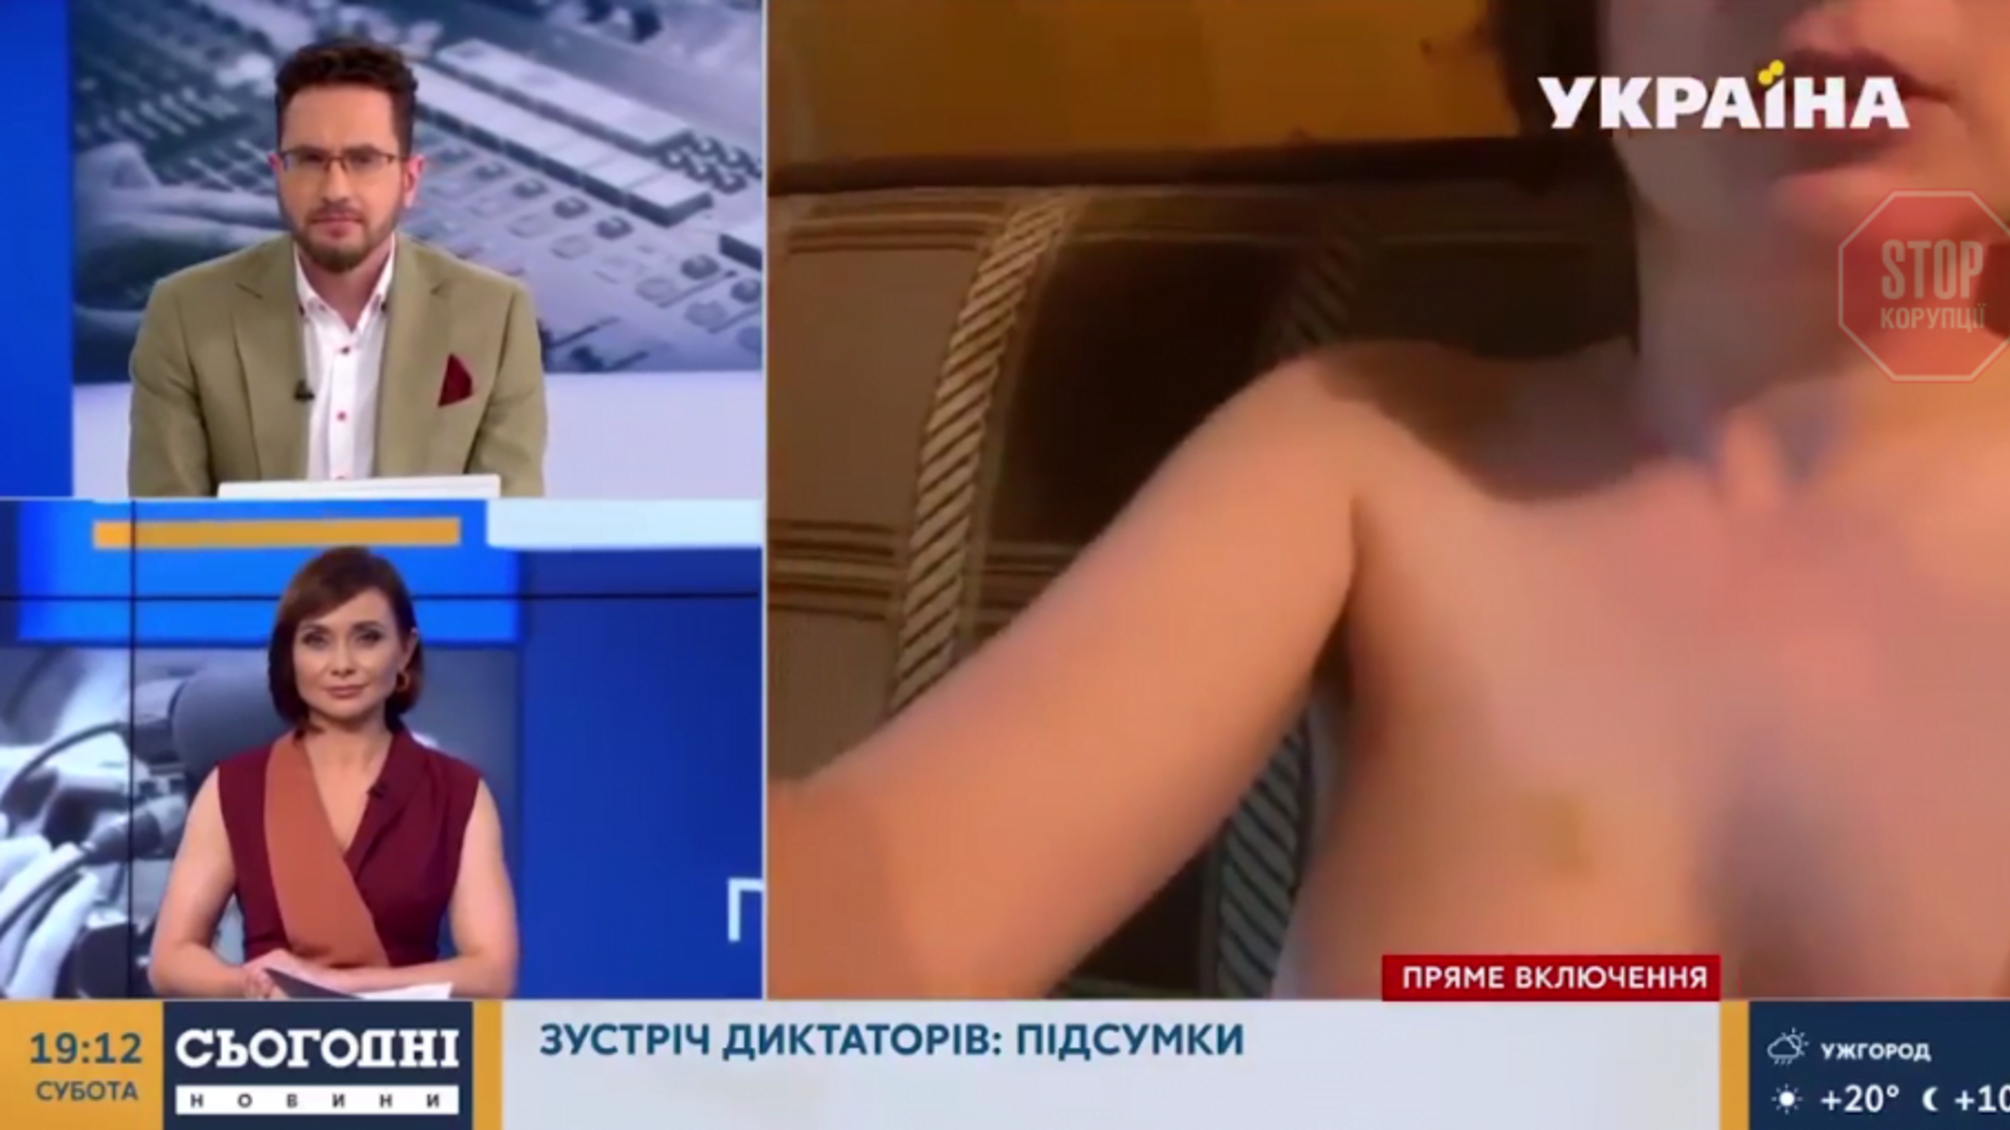 Під час увімкнення в прямому ефірі українського телеканалу випадково в кадр потрапила оголена жінка